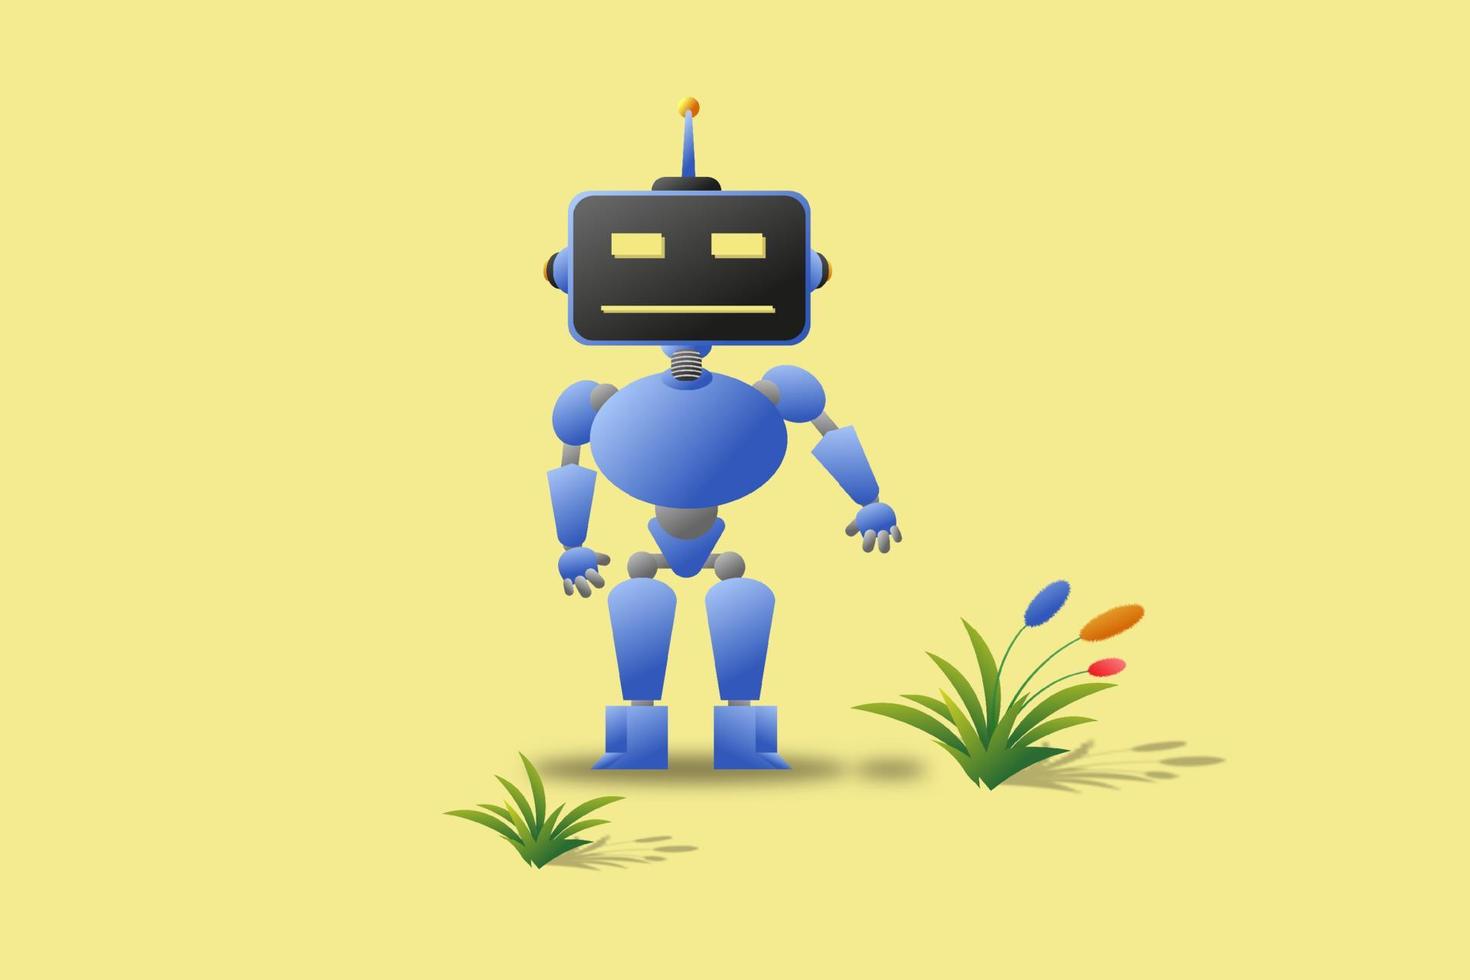 3D-Darstellung eines blauen Roboters mit quadratischem Kopf, der zwischen Blumen auf gelbem Hintergrund steht vektor